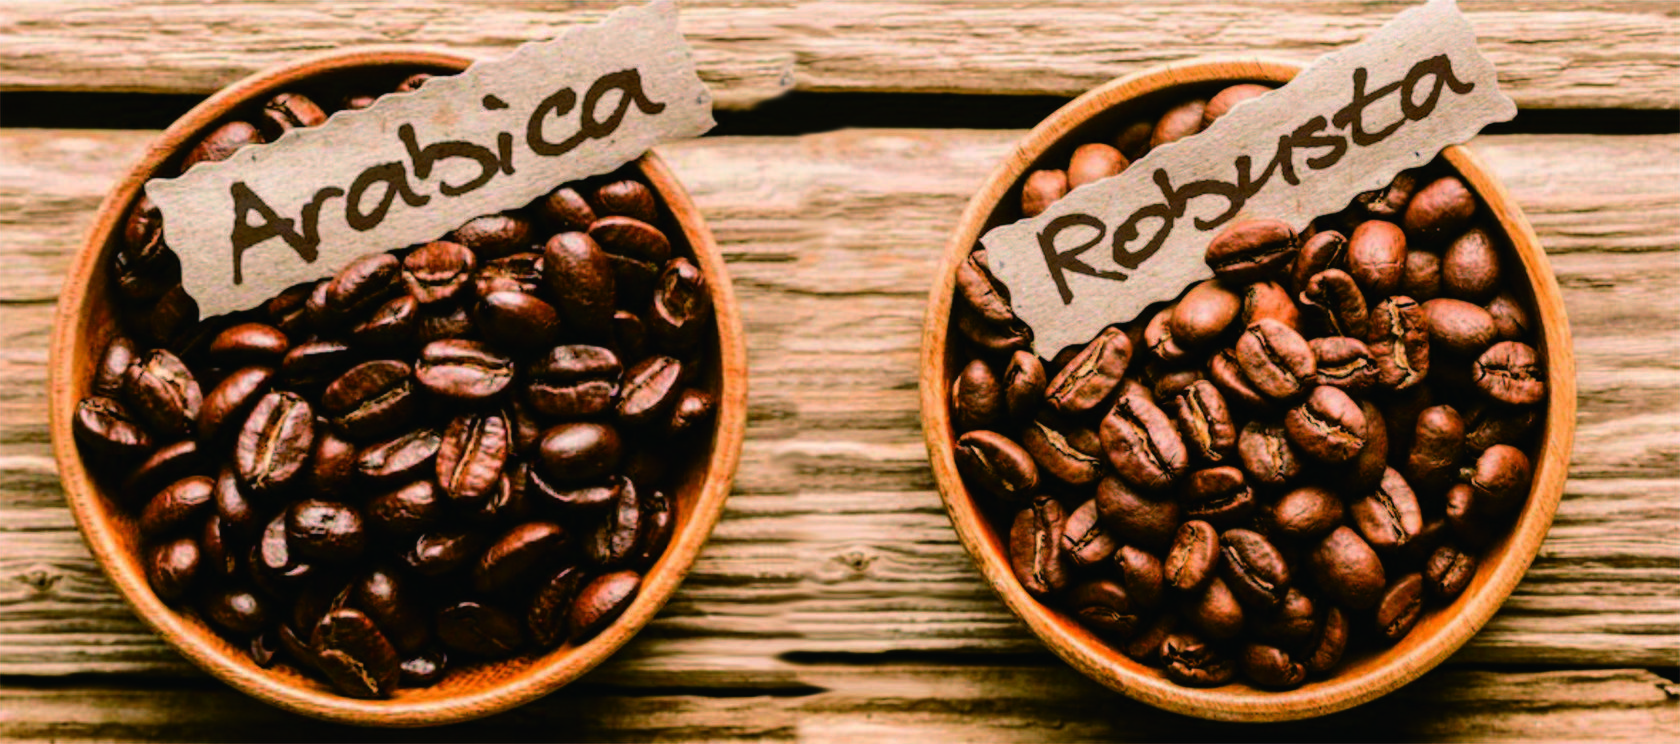 Арабика vs робуста: что нужно знать о самых популярных сортах кофе /  на сайте росконтроль.рф